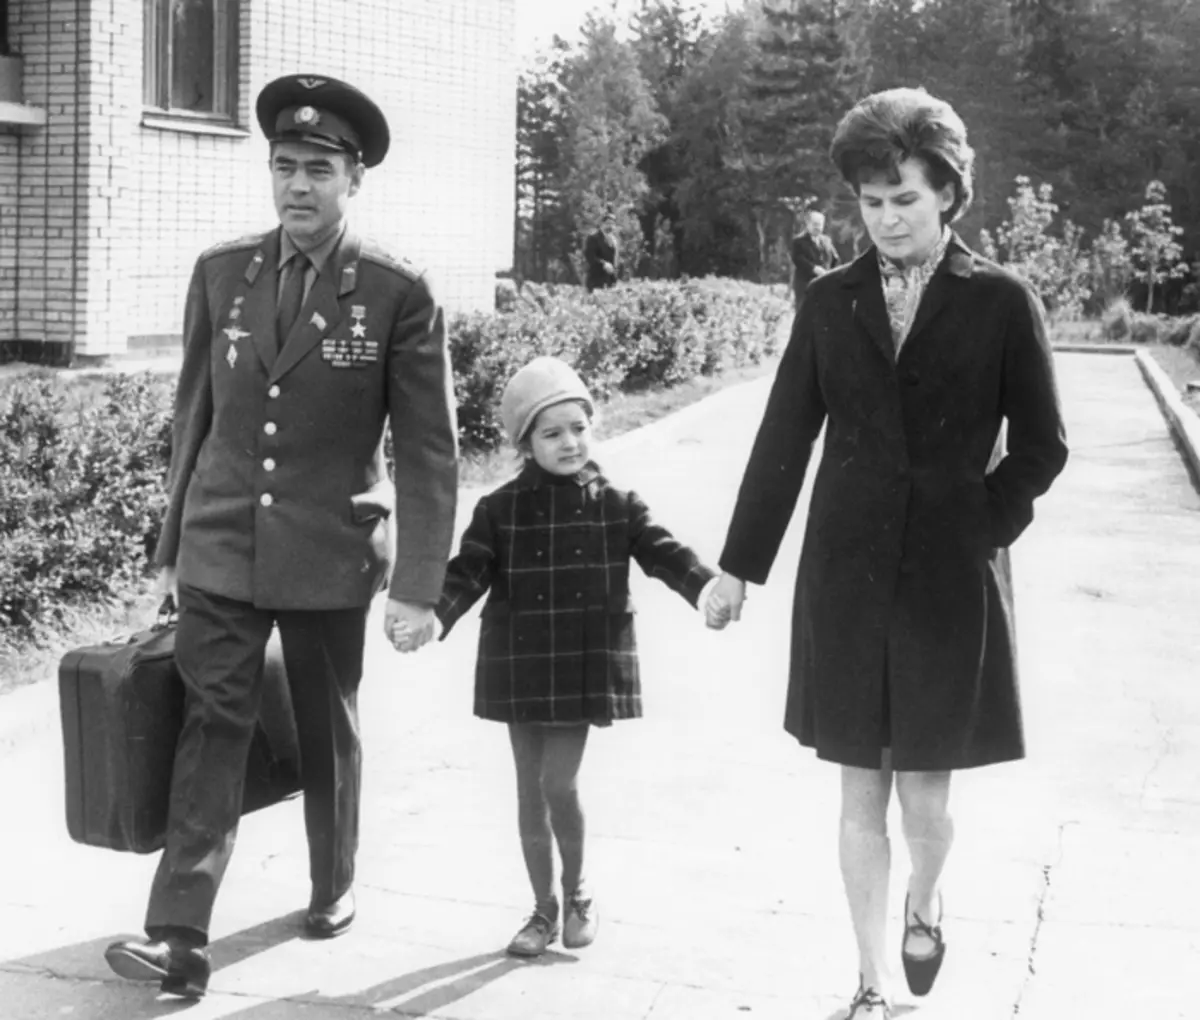 Według pogłoski, małżeństwo Andrija Nikolaeva i Tereshkova zaplanowano Nikita Khrushchev. Wkrótce pojawiła się jedyna córka kosmonautów Elena